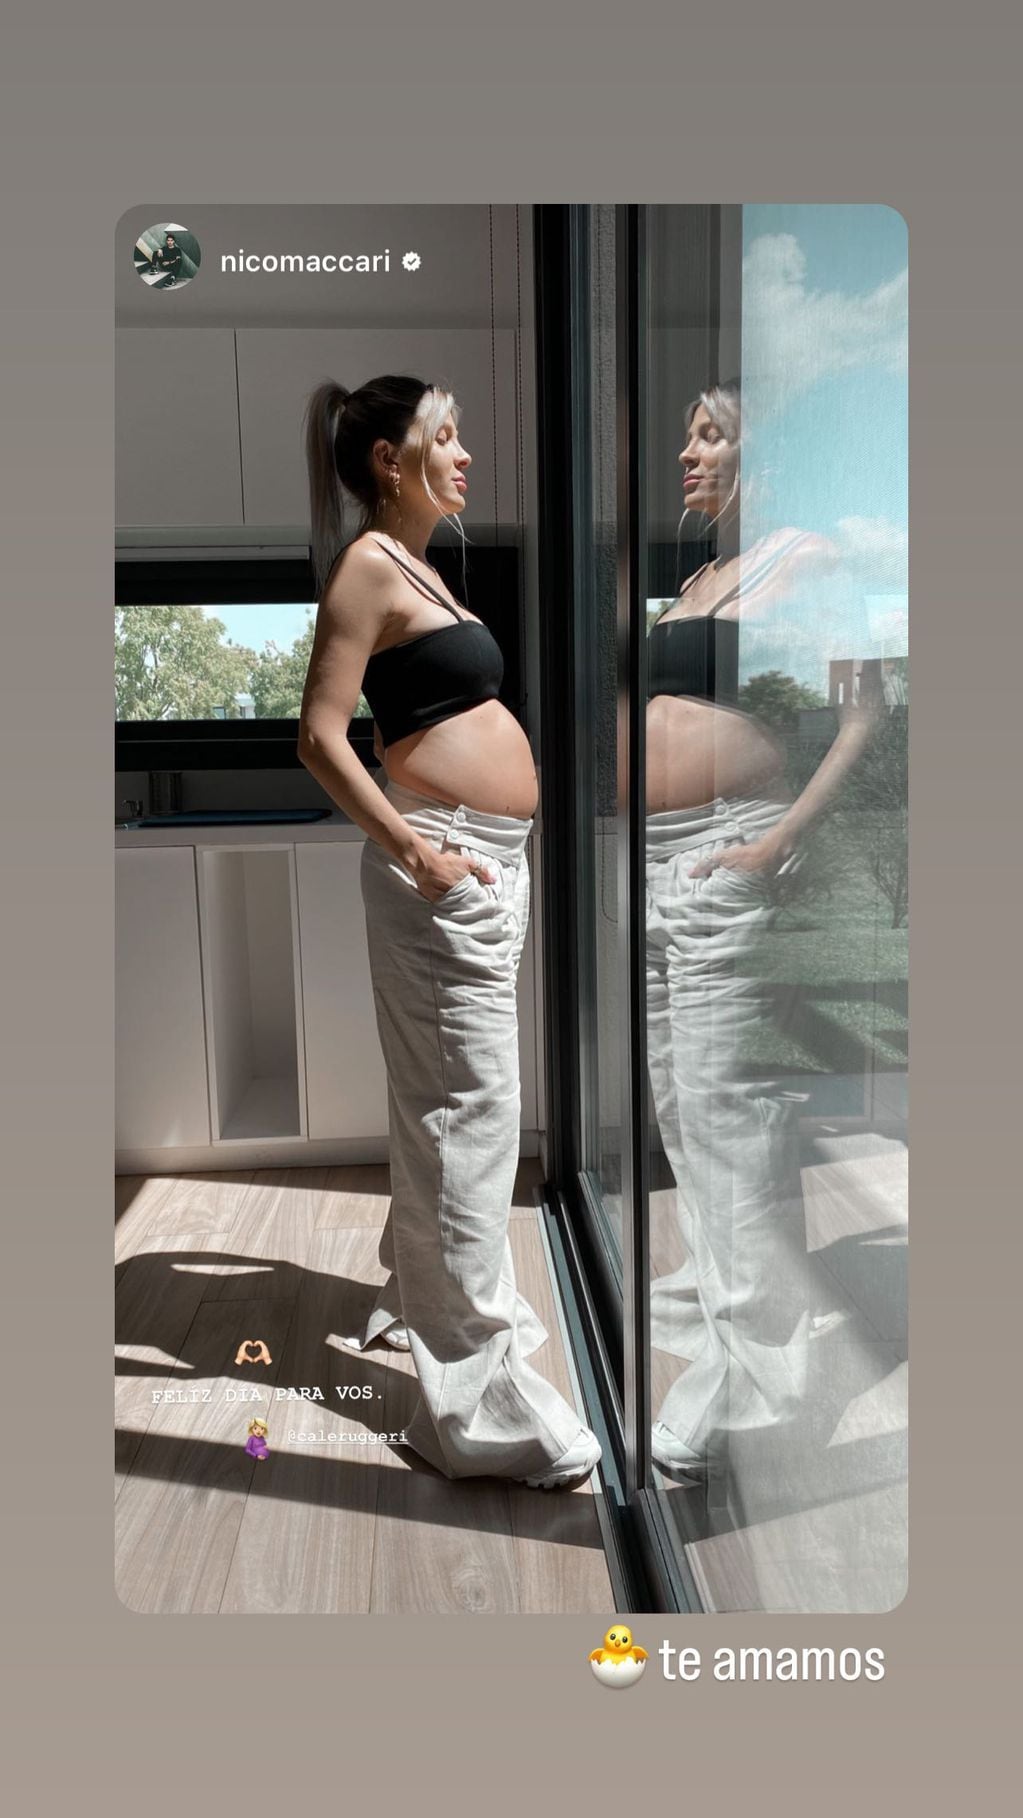 Cande Ruggeri deslumbró con su look en su sexto mes de embarazo